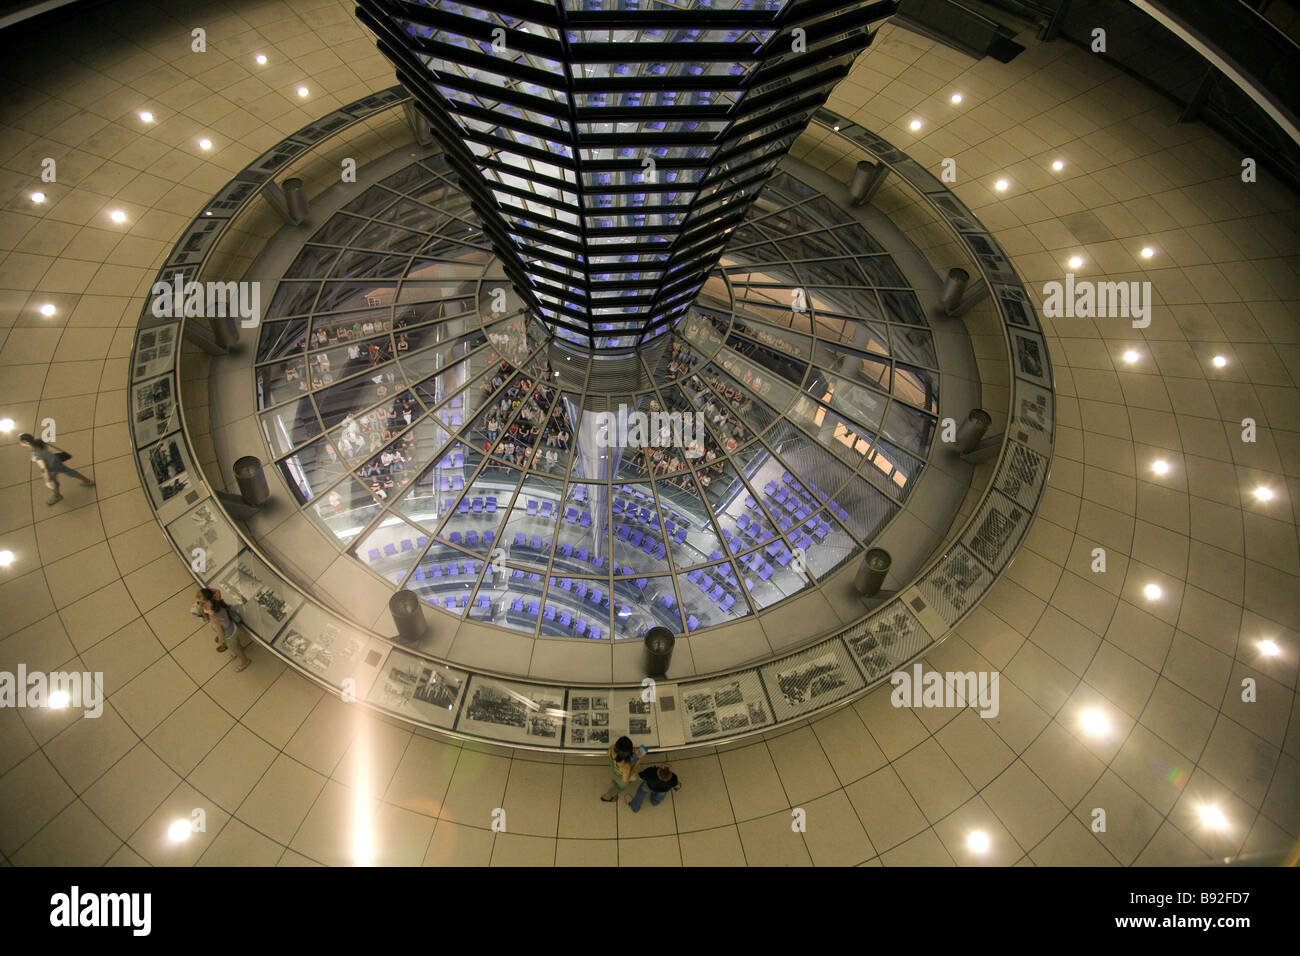 La cupola di vetro in cima al Reichstag di notte dove i visitatori possono osservare il Bundestag la Camera Bassa del parlamento tedesco Foto Stock